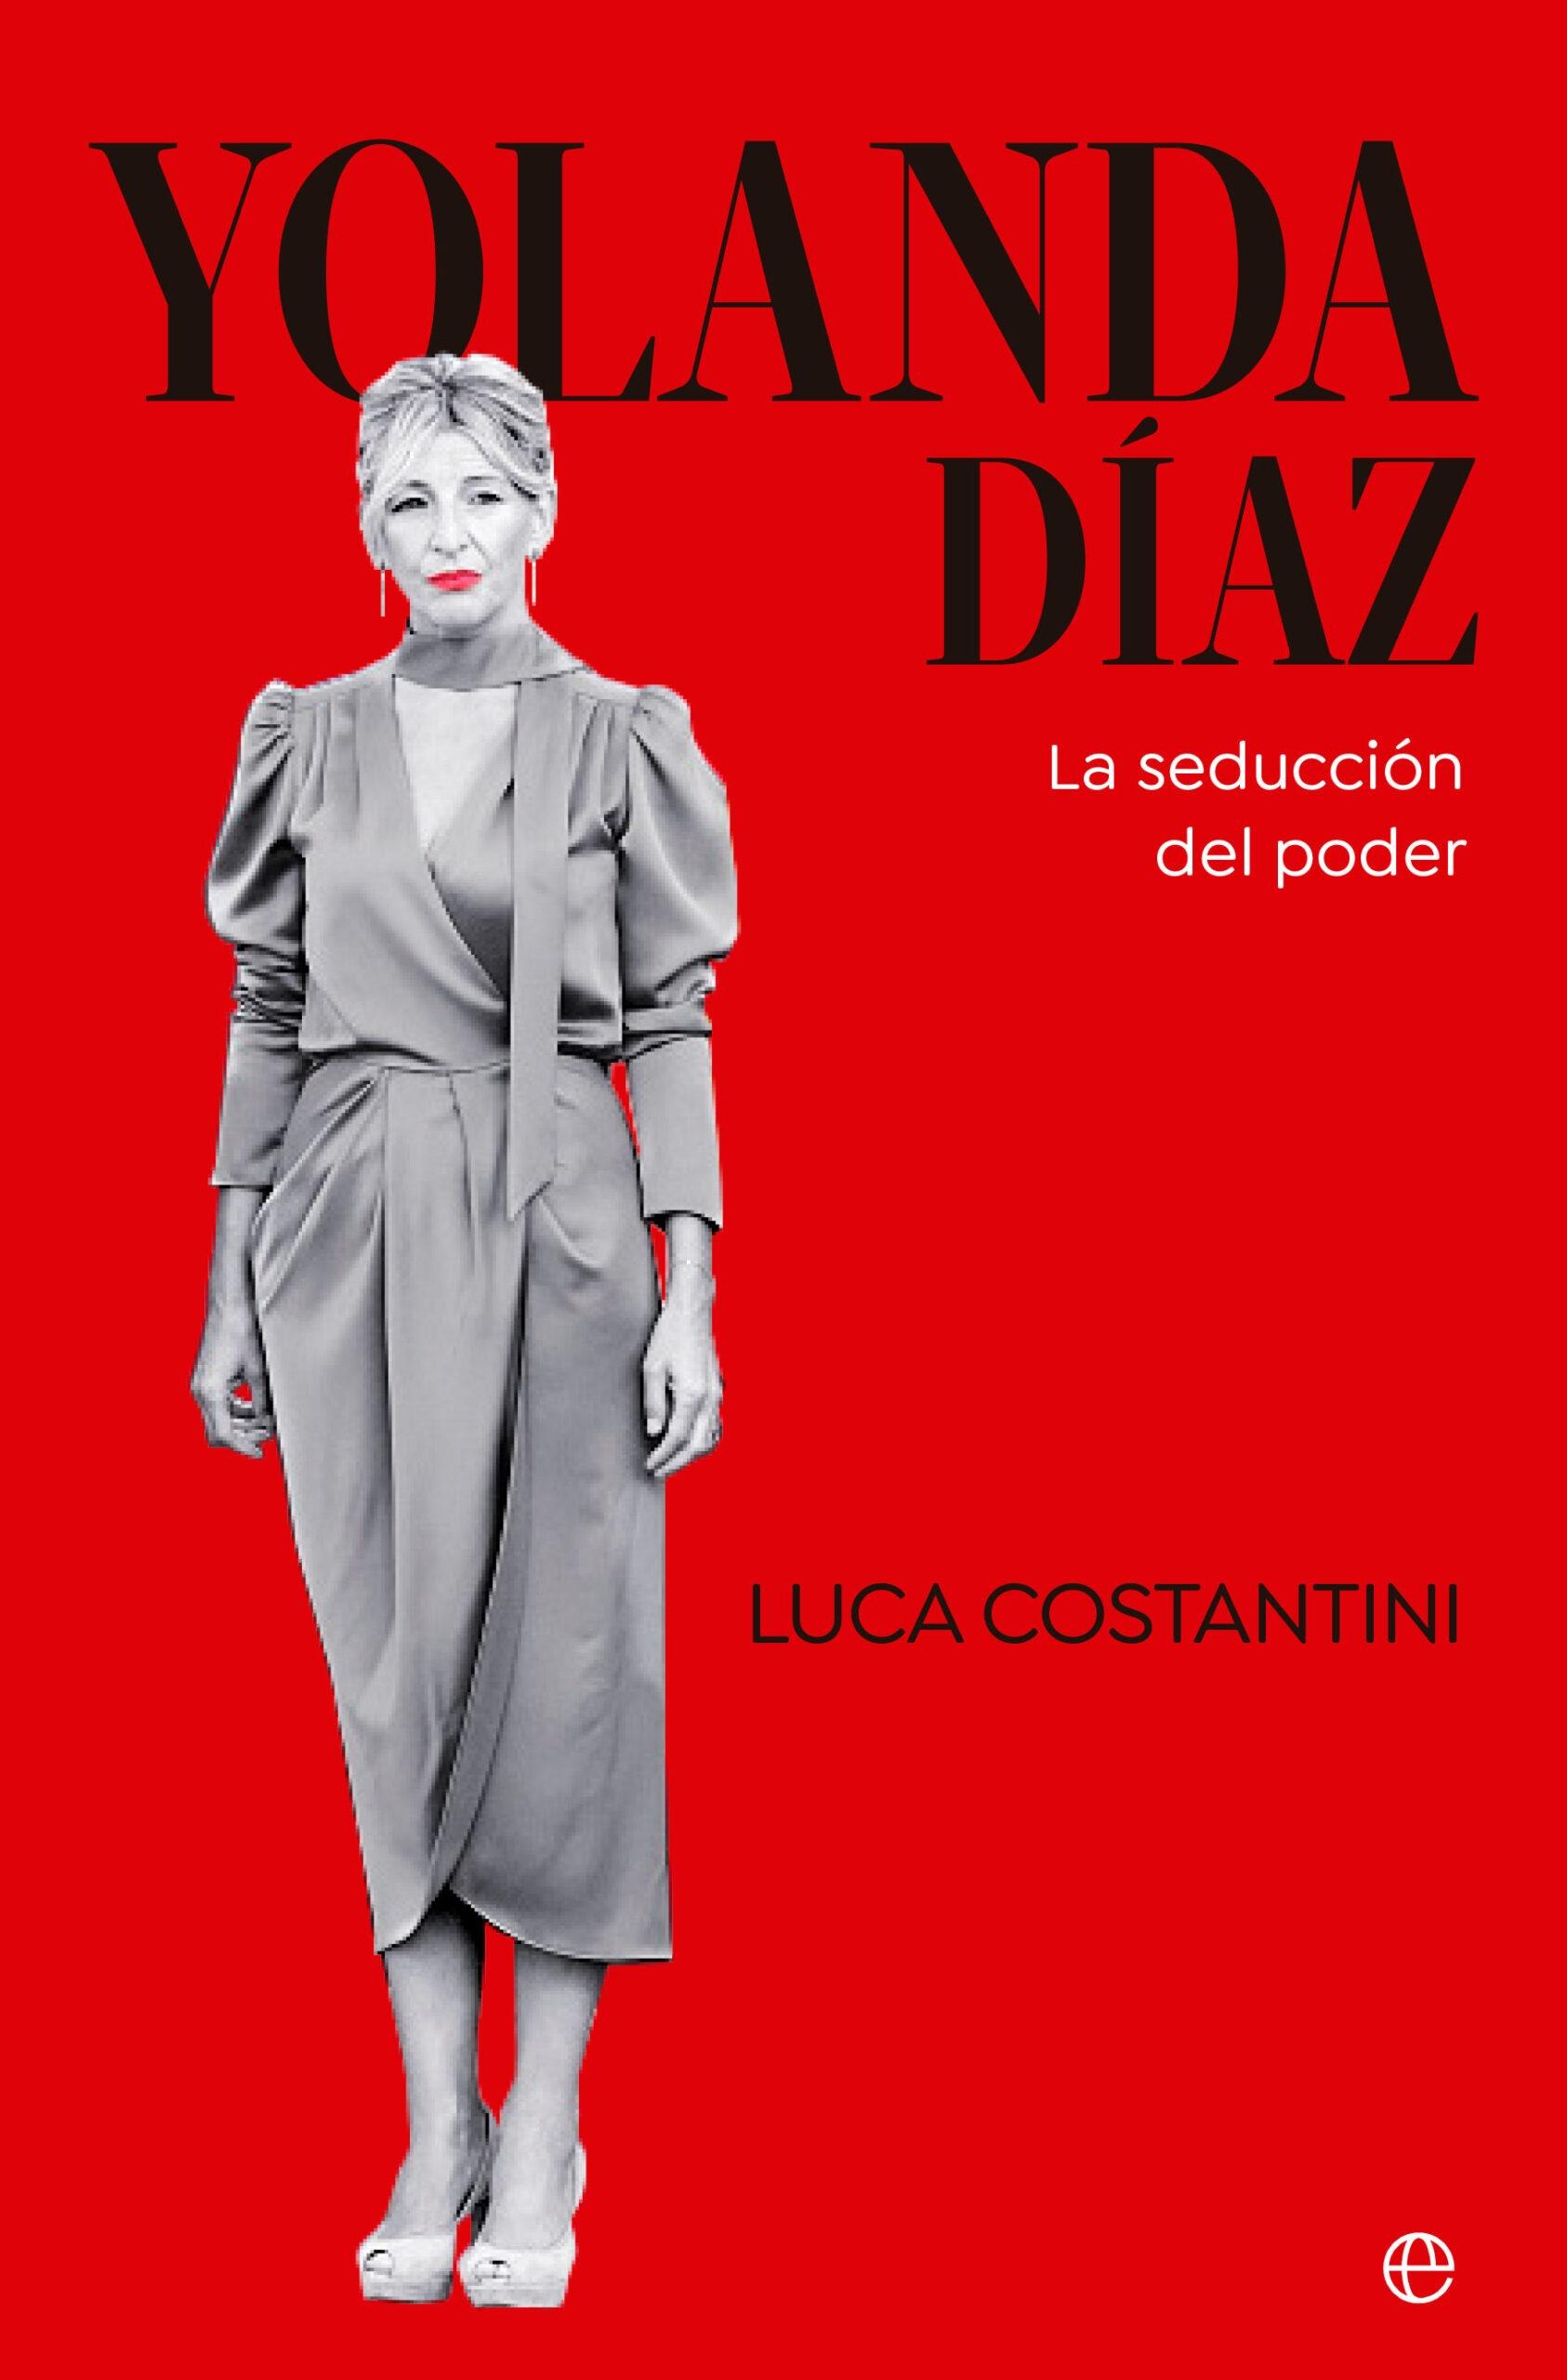 Yolanda Díaz "La Seducción del Poder". 